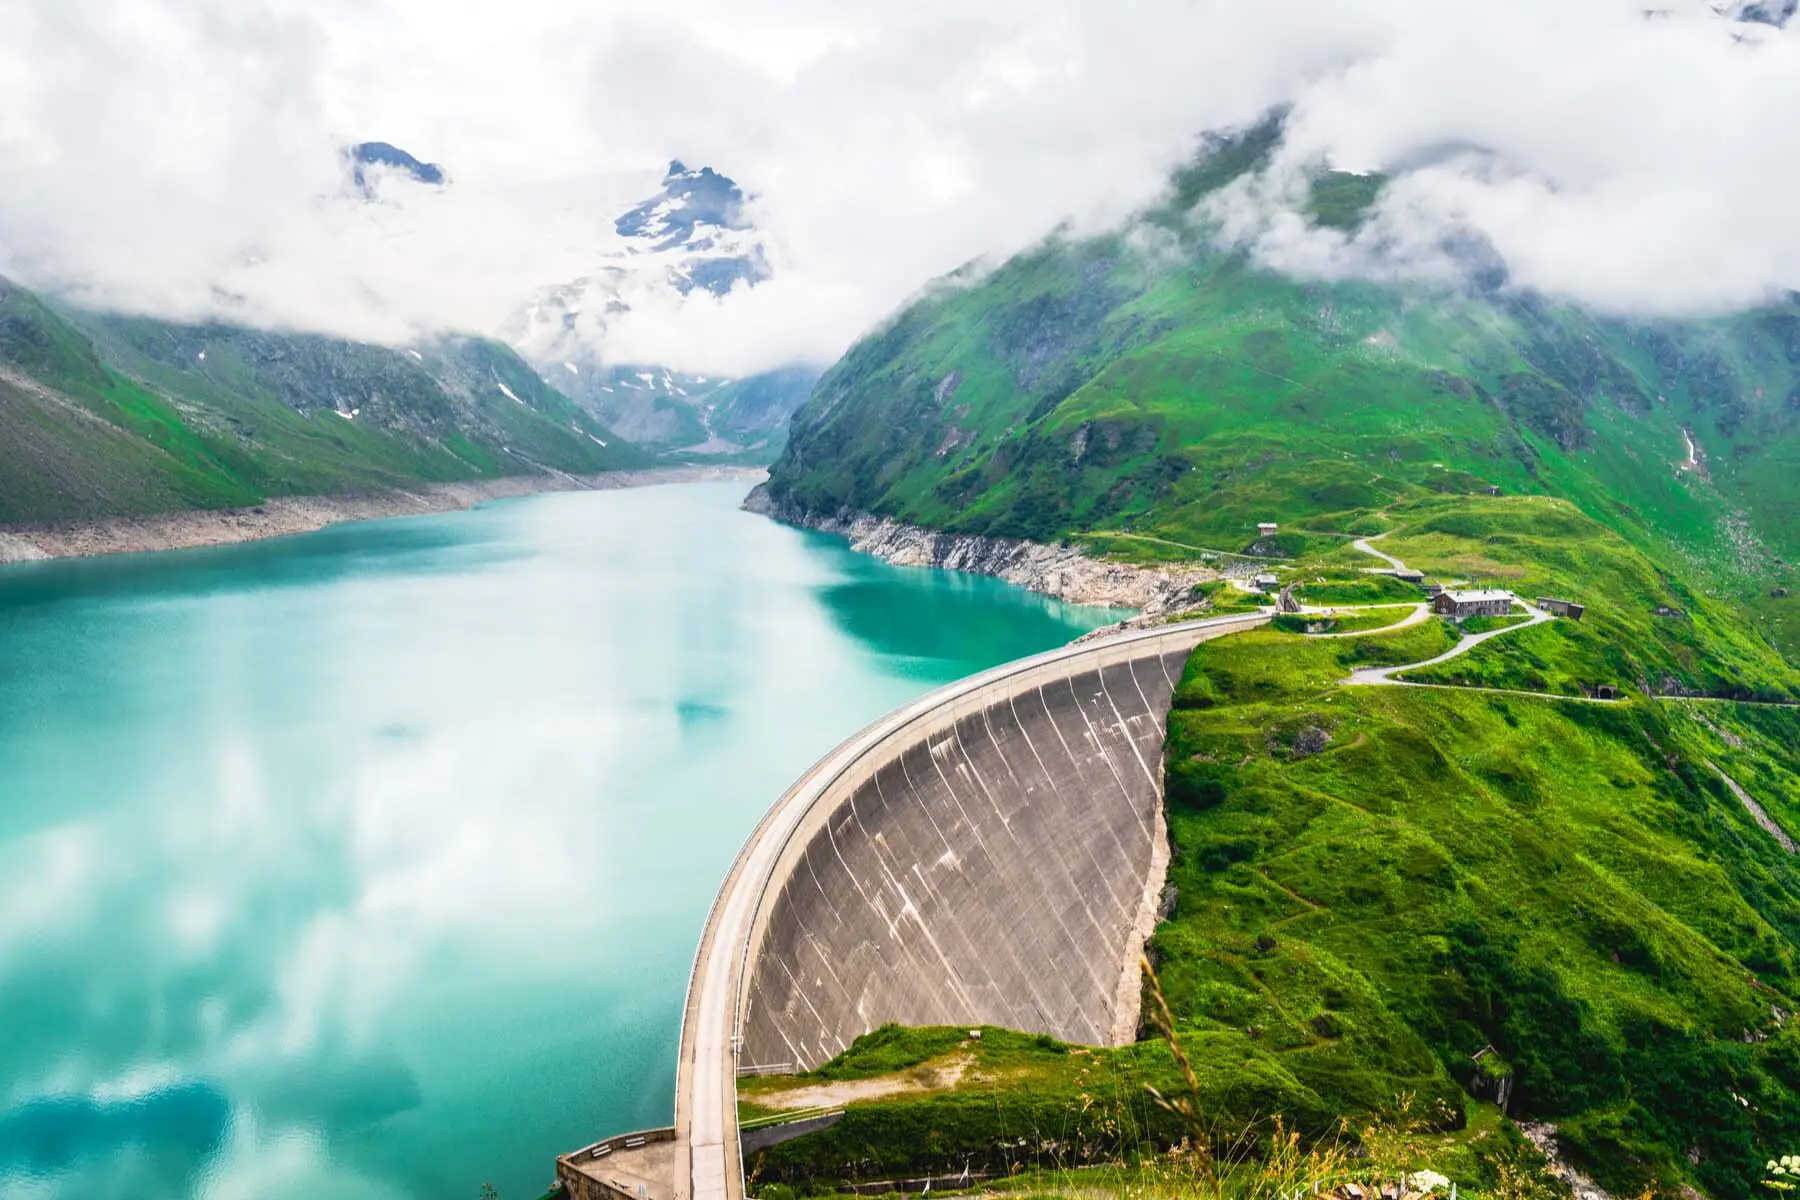 Hydroelectric dam in Austria